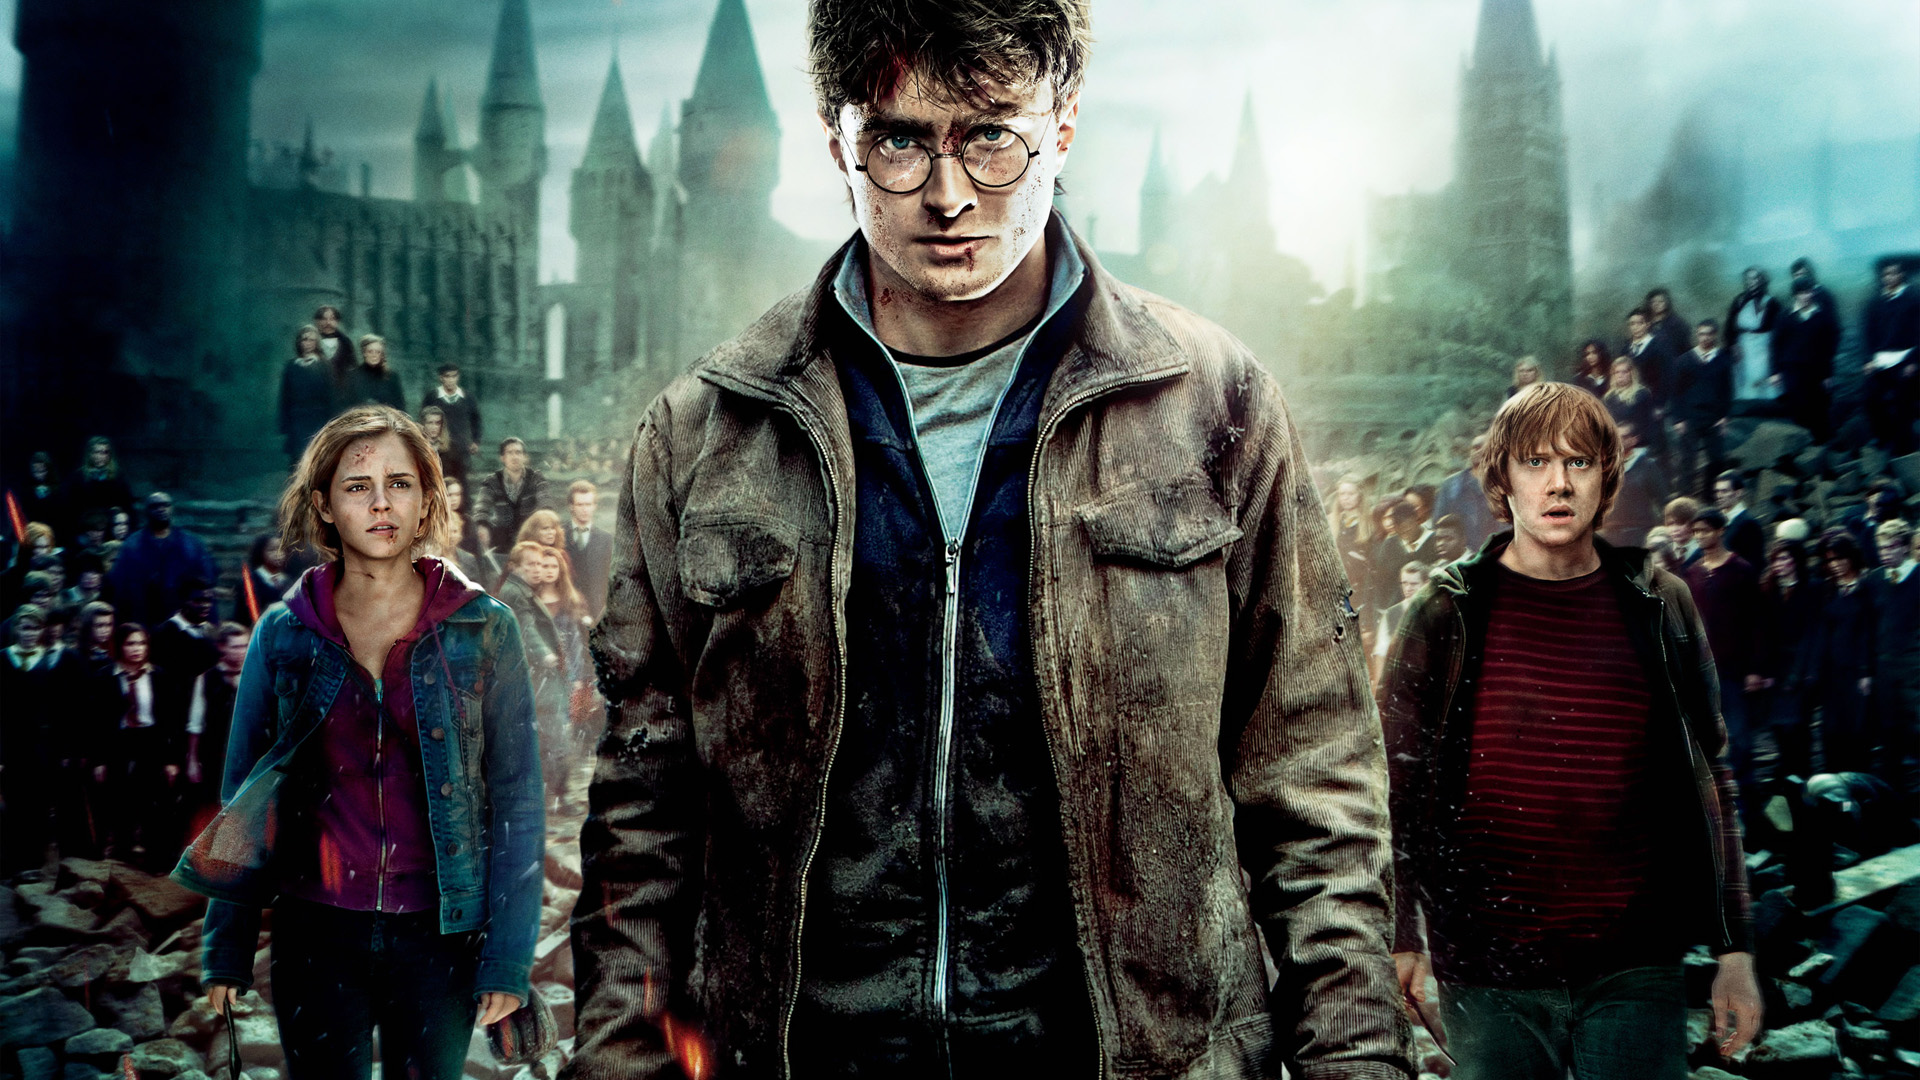 Critique : Harry Potter et la Coupe de feu, de Mike Newell (Harry